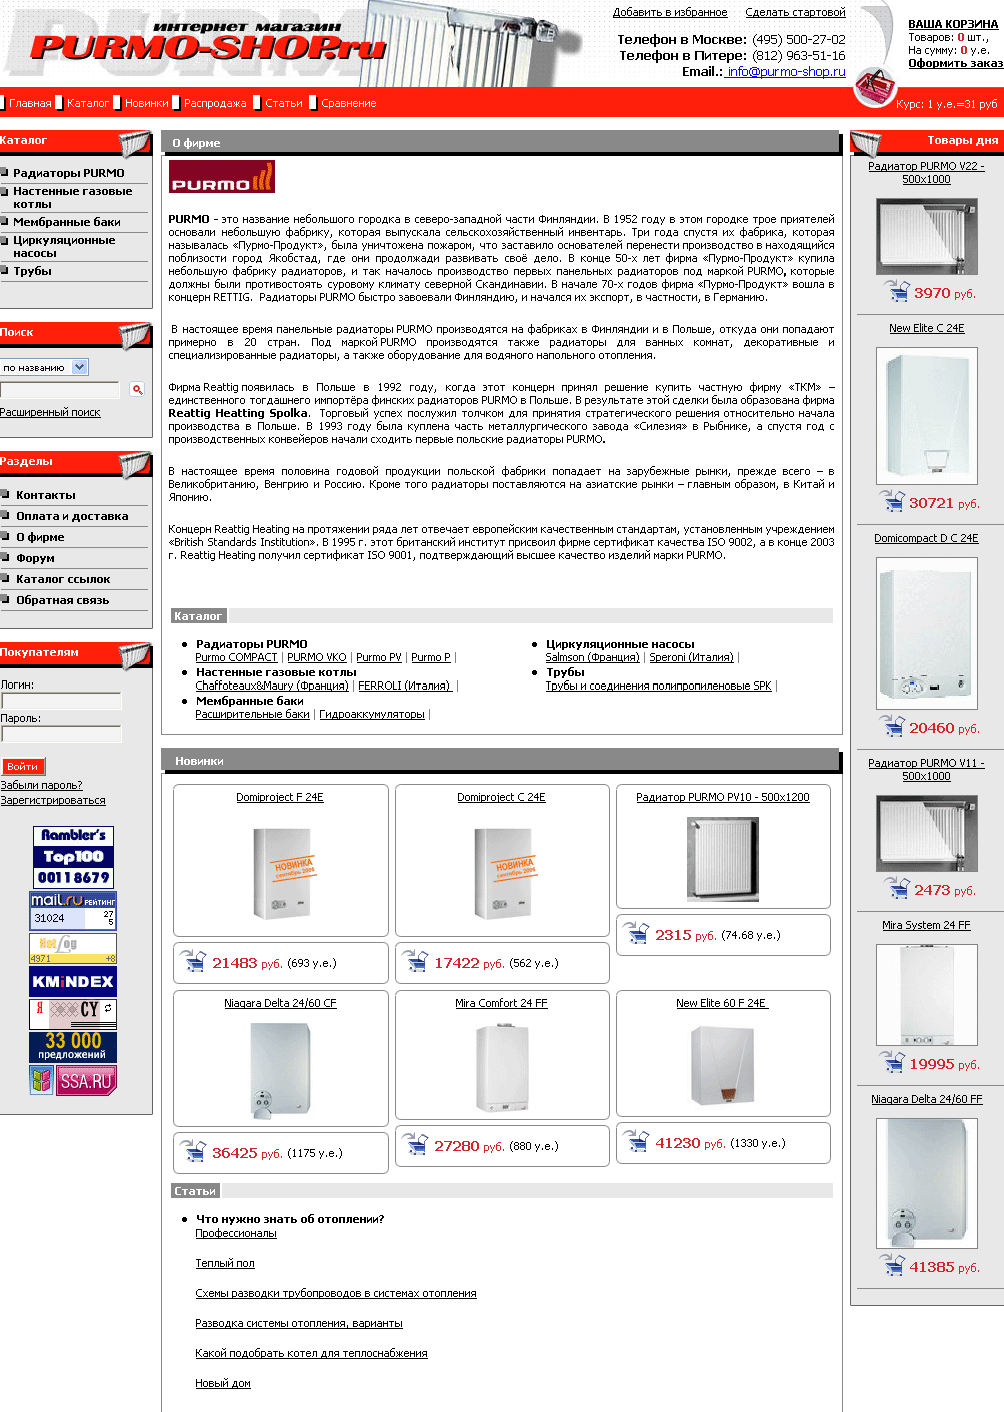 Cозданый интернет-магазин радиаторов и элементов системы отопления